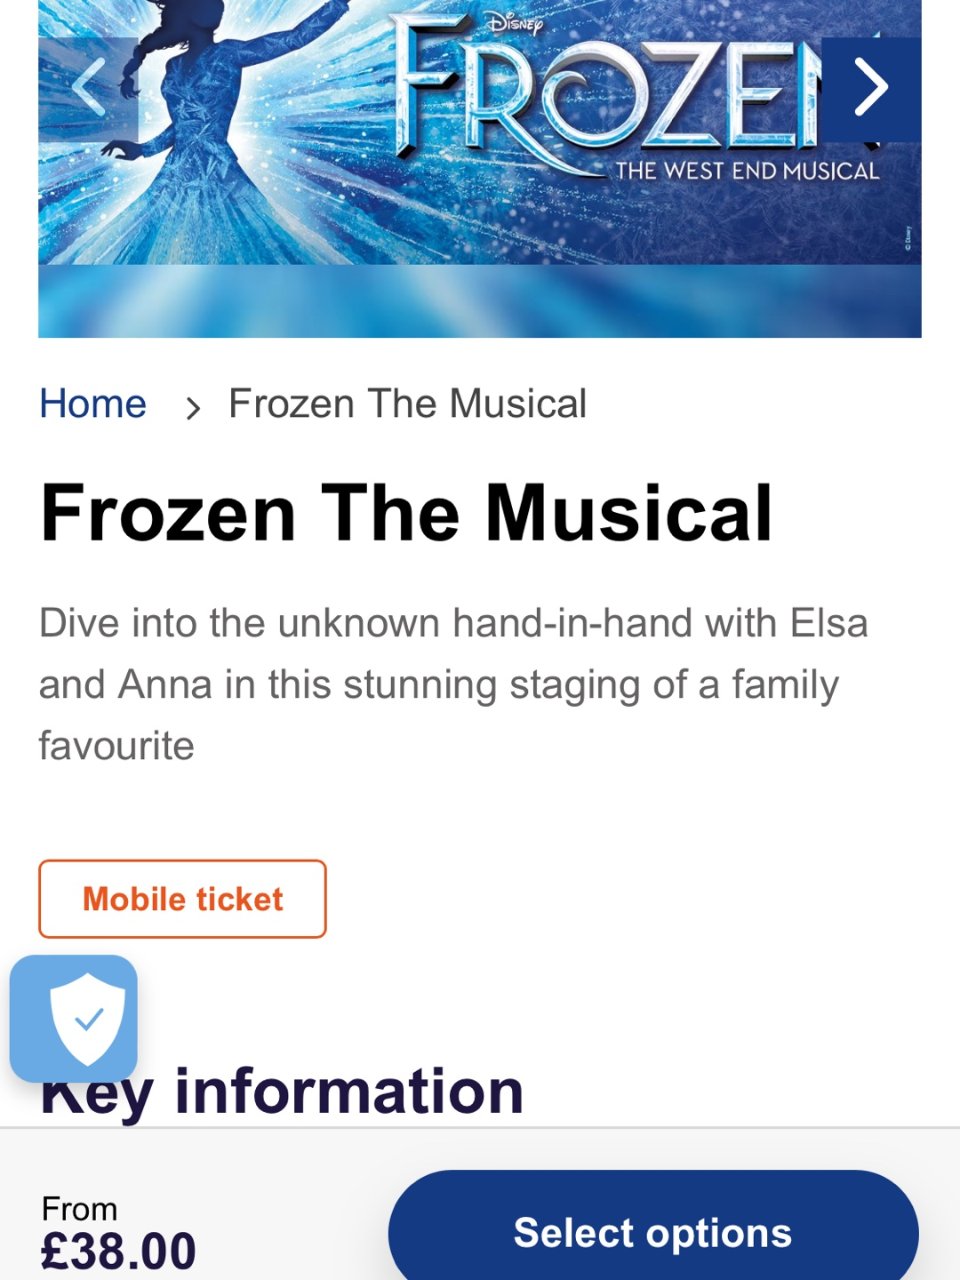 £11 冲到Frozen音乐剧是我没想到...